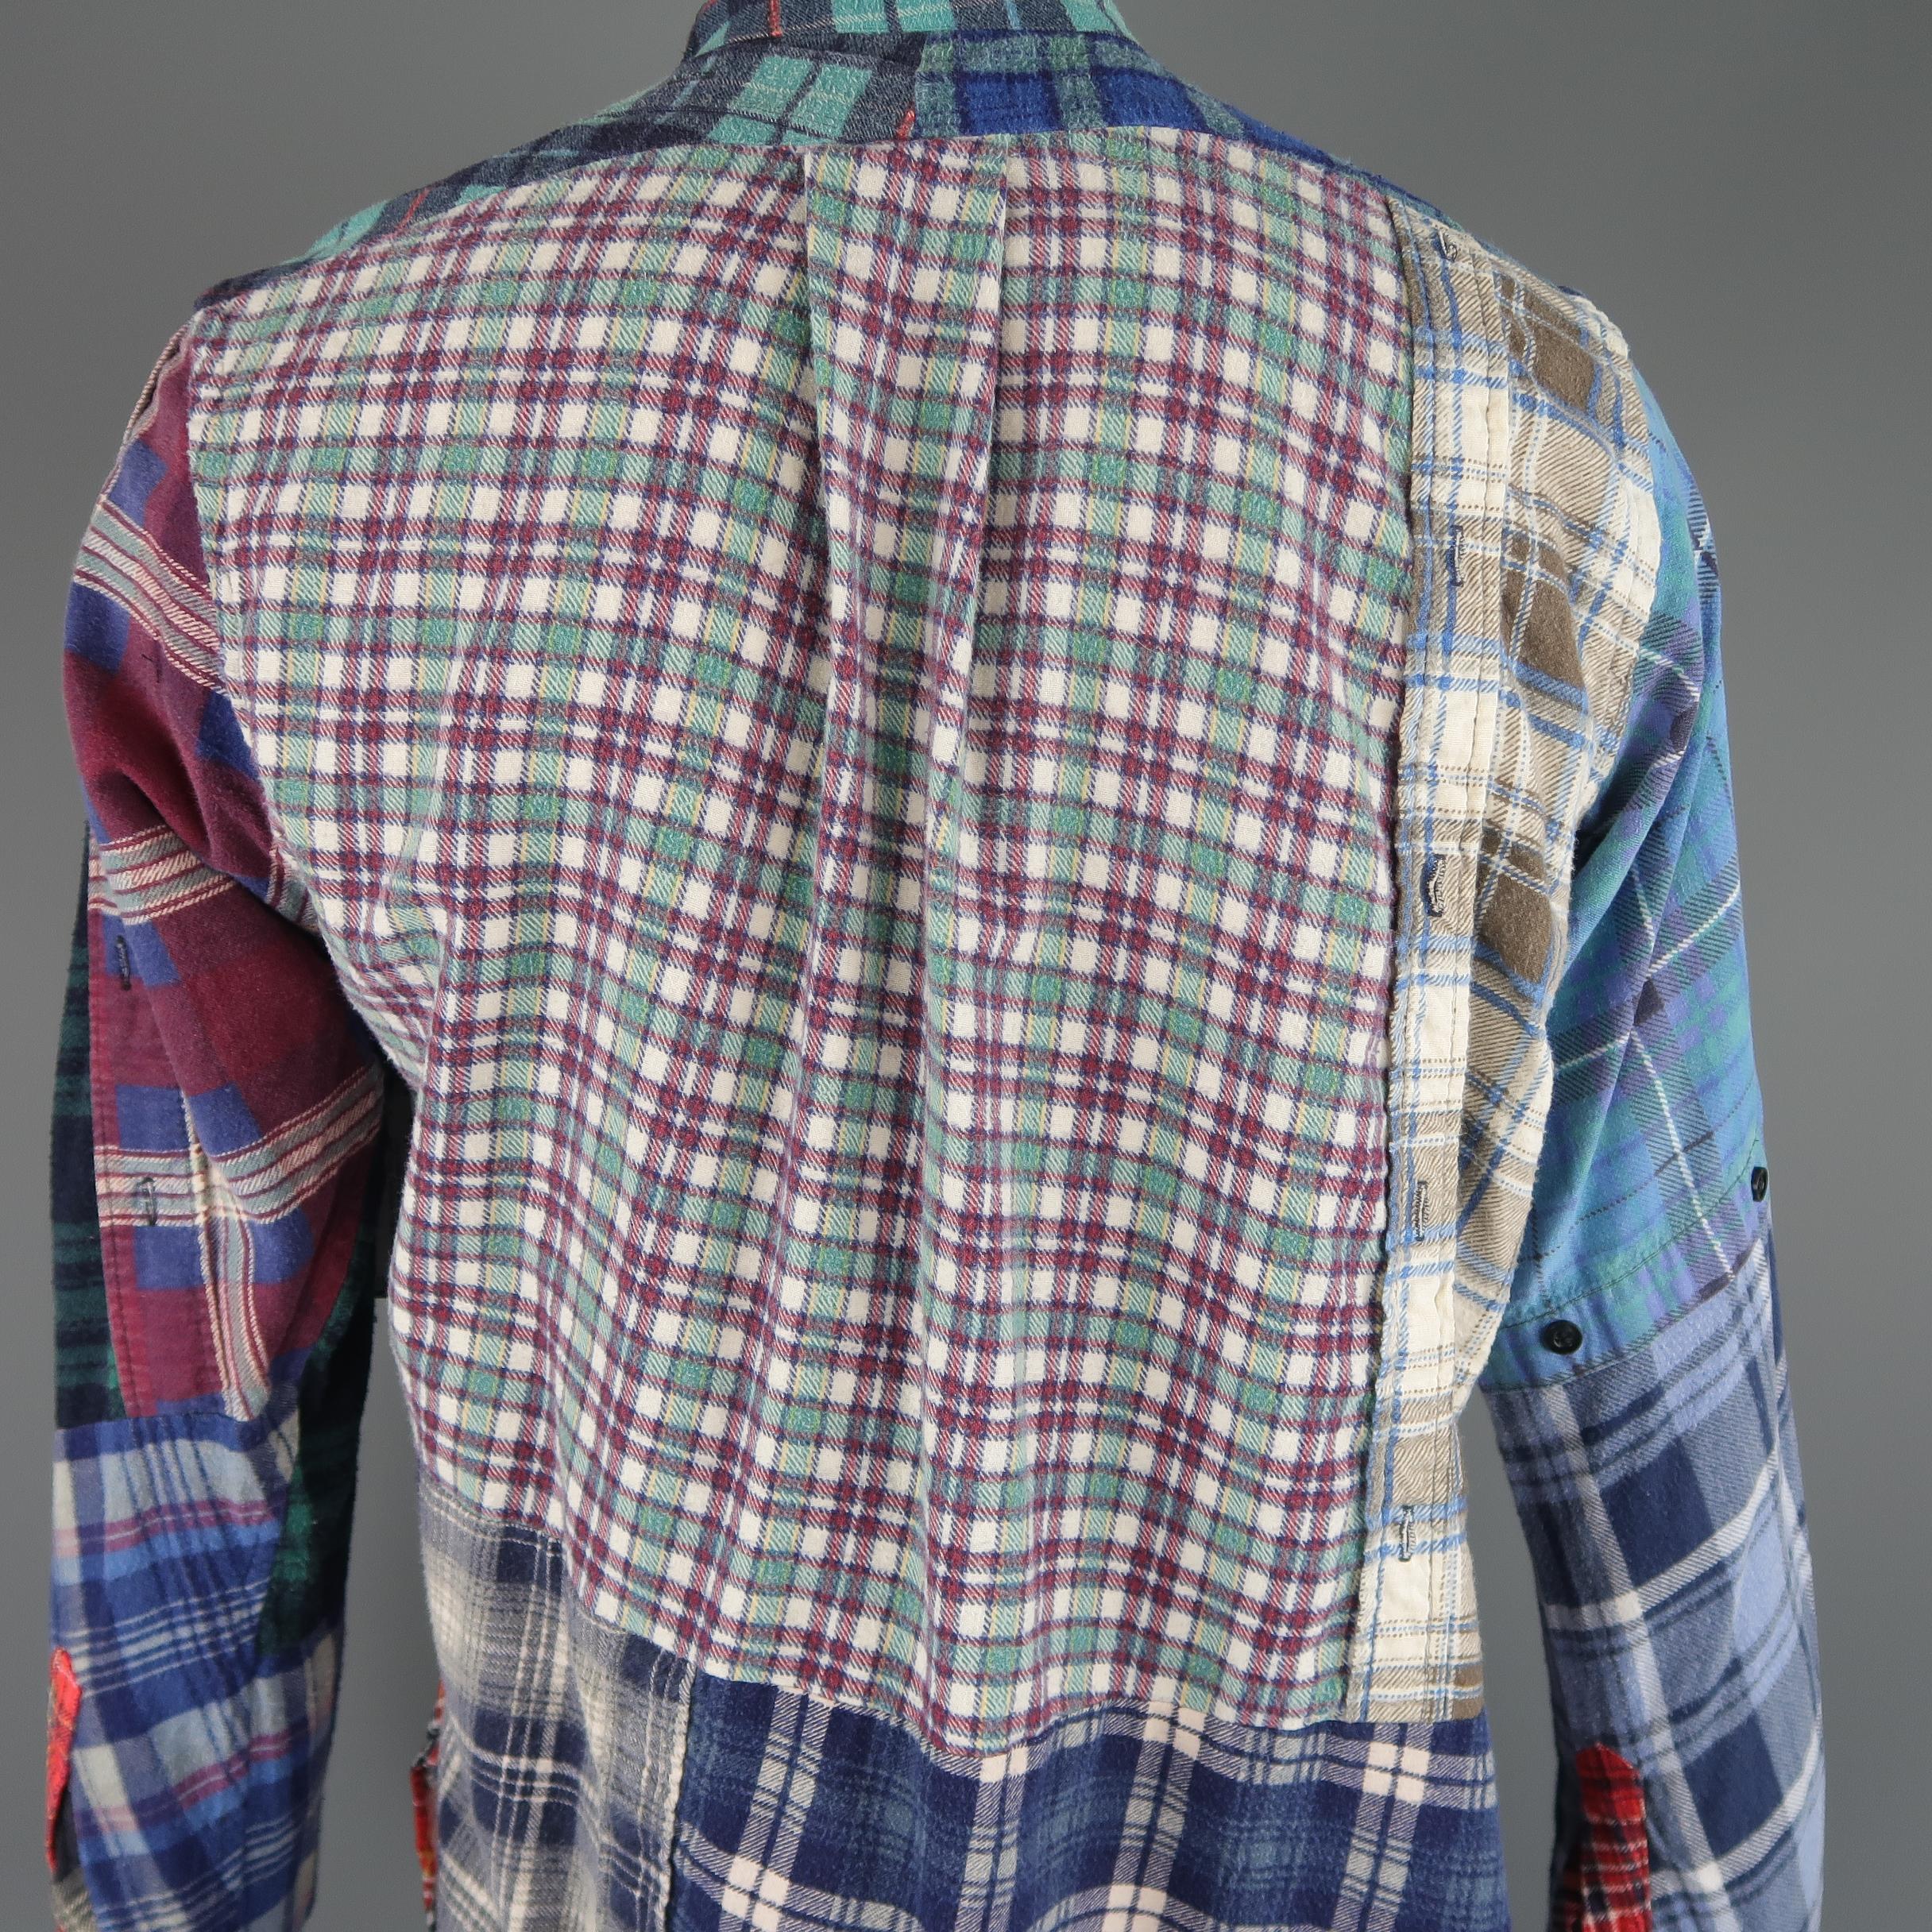 Rebuild by Needles Multi-Color Patchwork Plaid Cotton Flannel Shirt 2